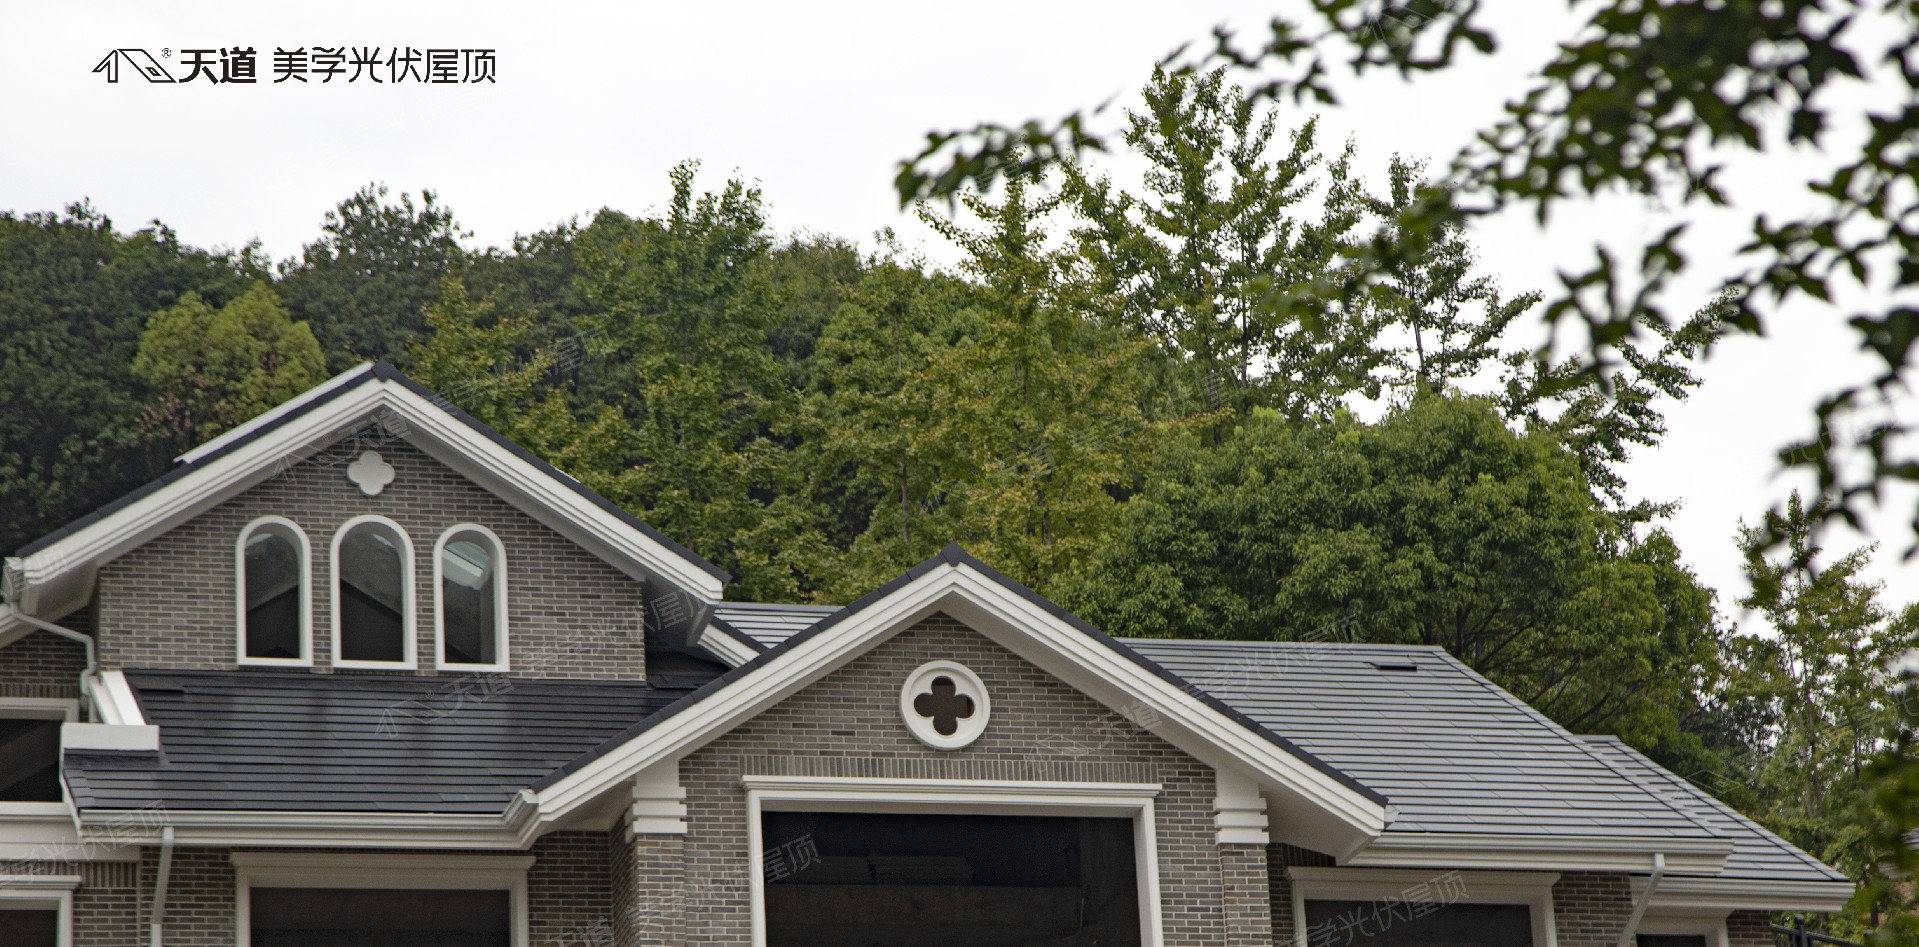 光伏屋顶——环保节能的小帮手